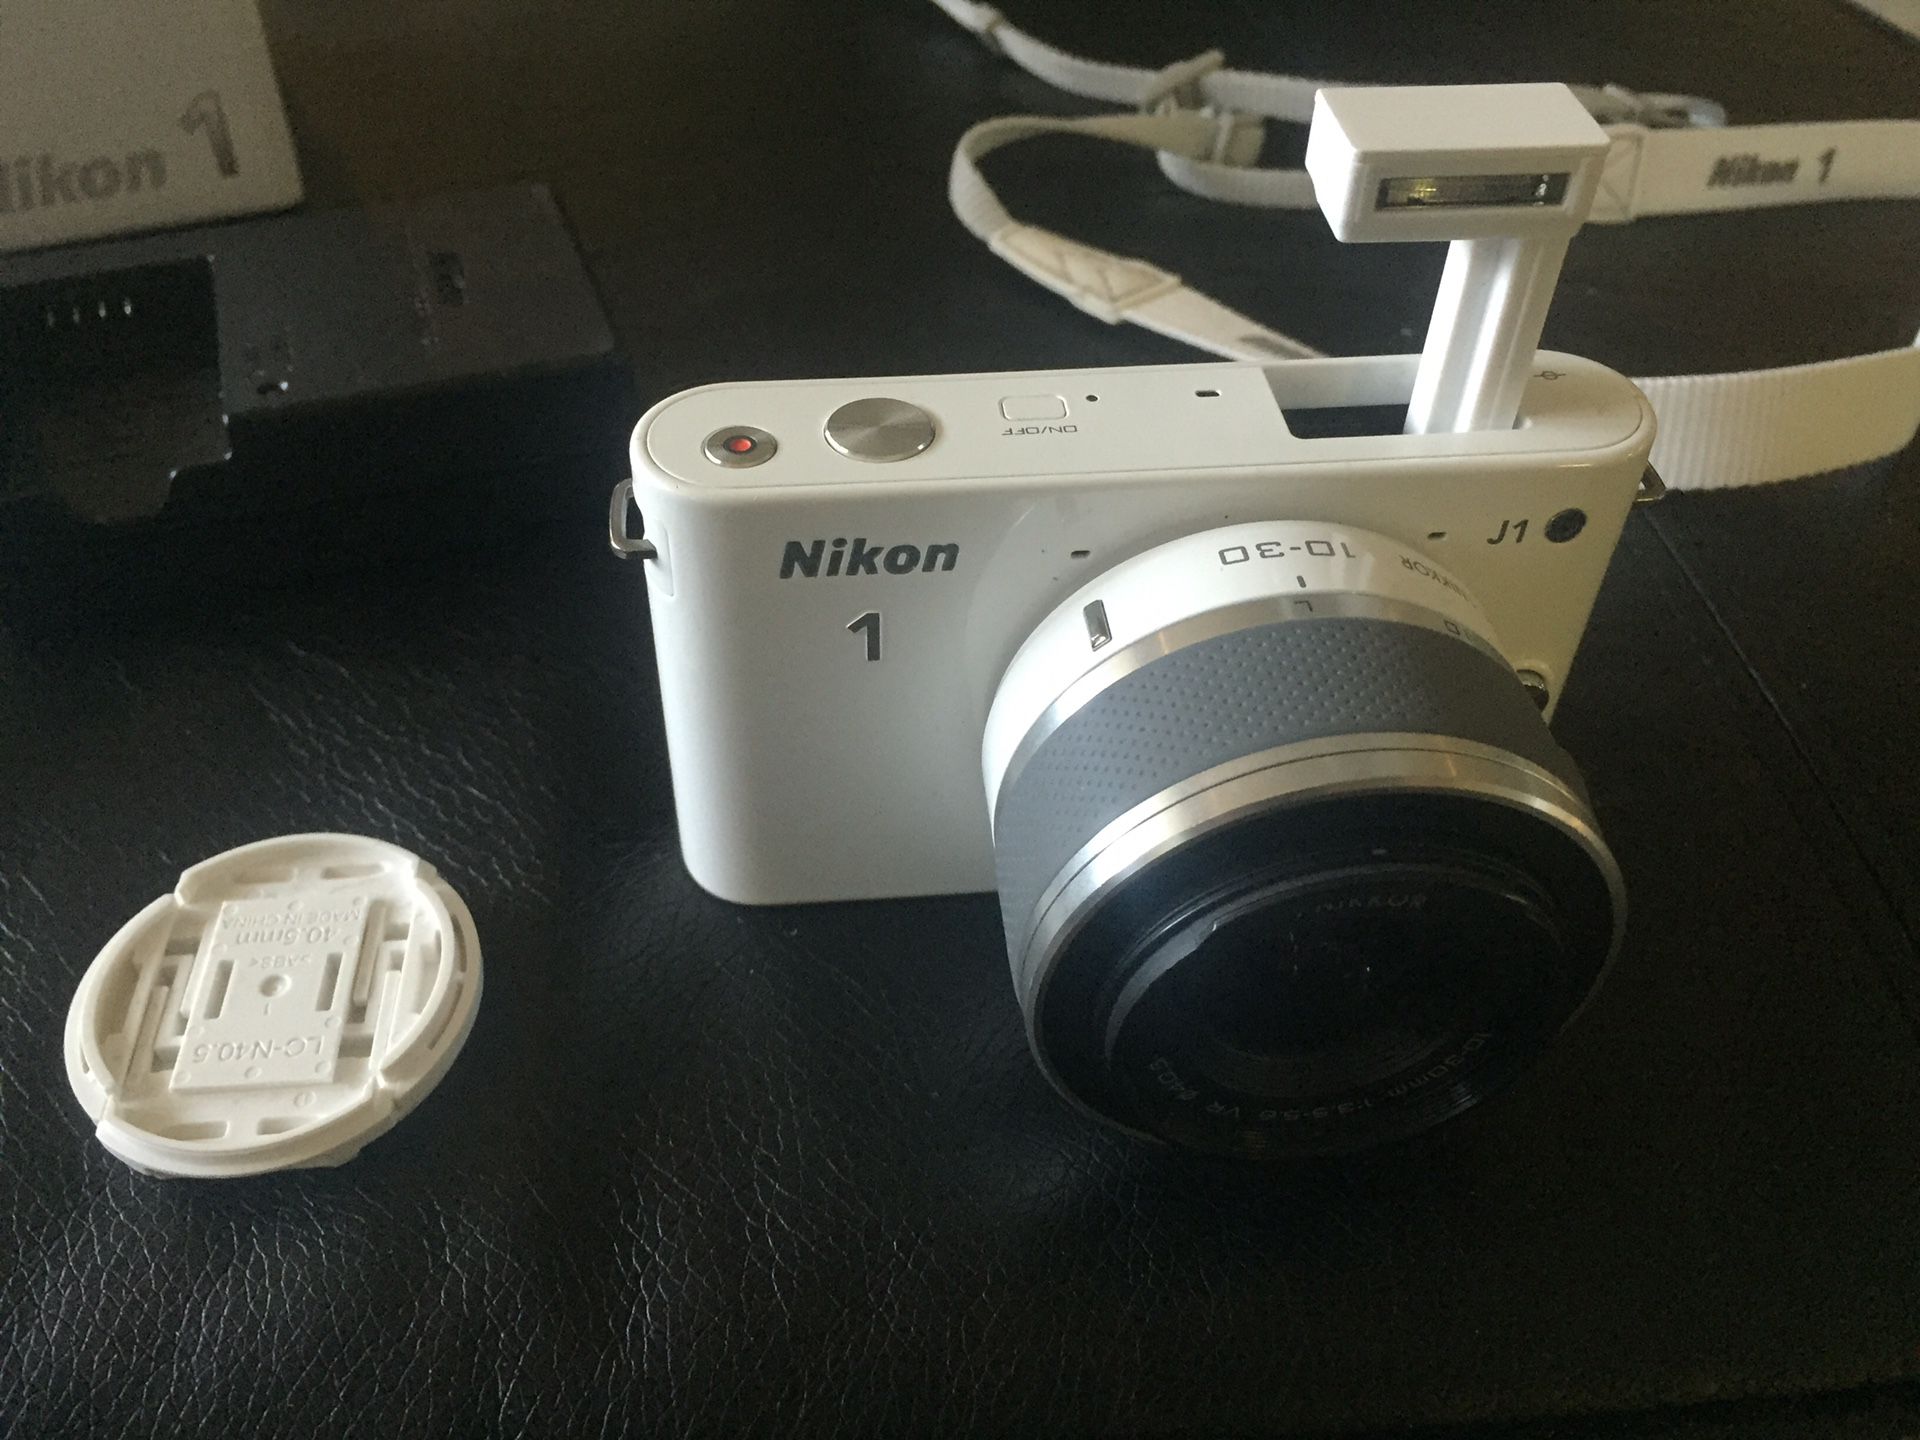 NIKON J1 series with 10-30M lenses